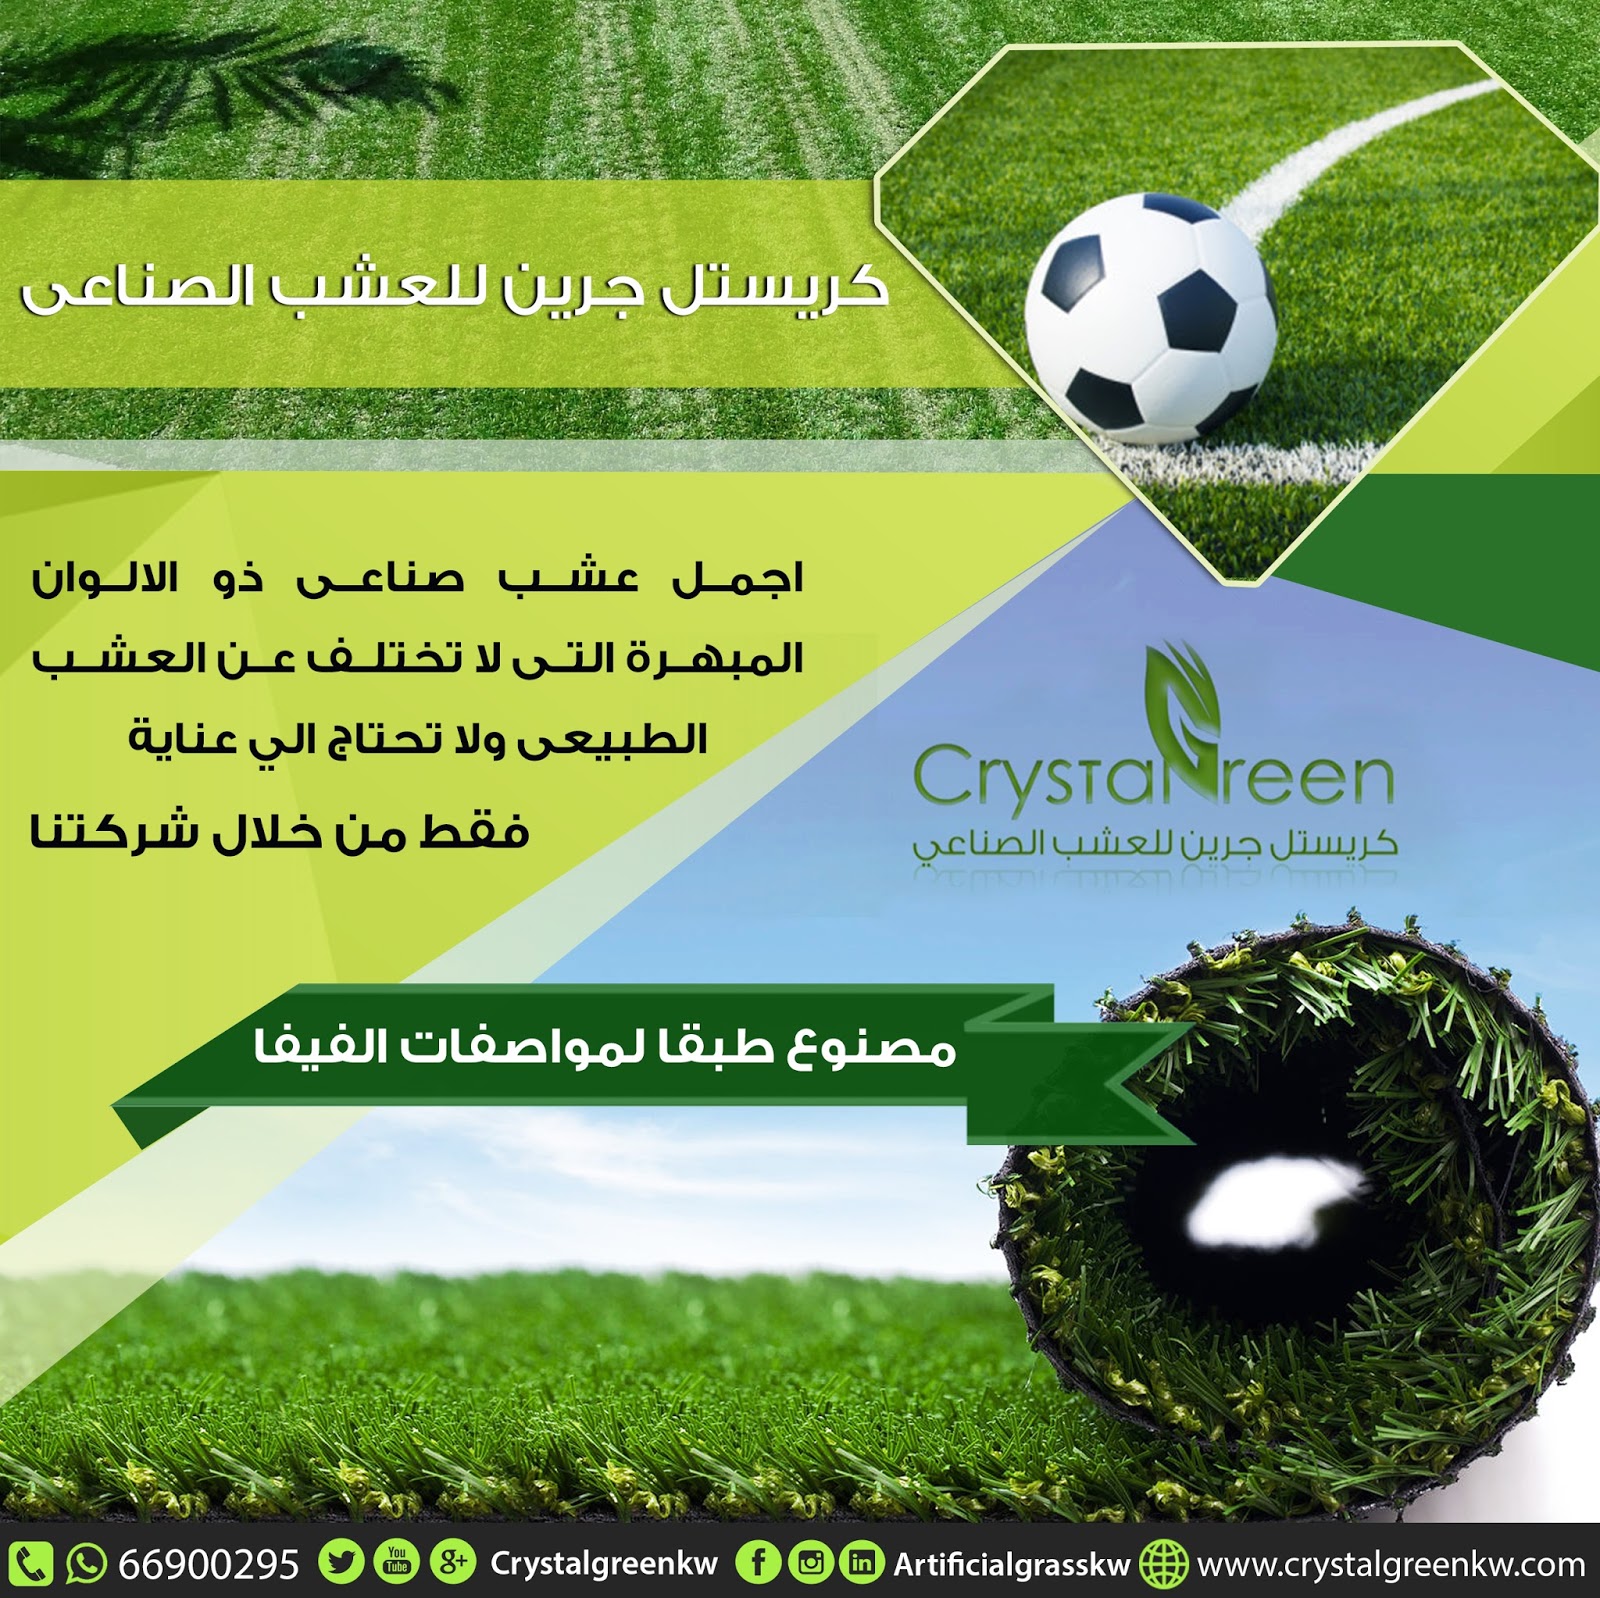 مميزات النجيلة الصناعية في تزيين الحدائق والملاعب الرياضية - كريستل جرين  1